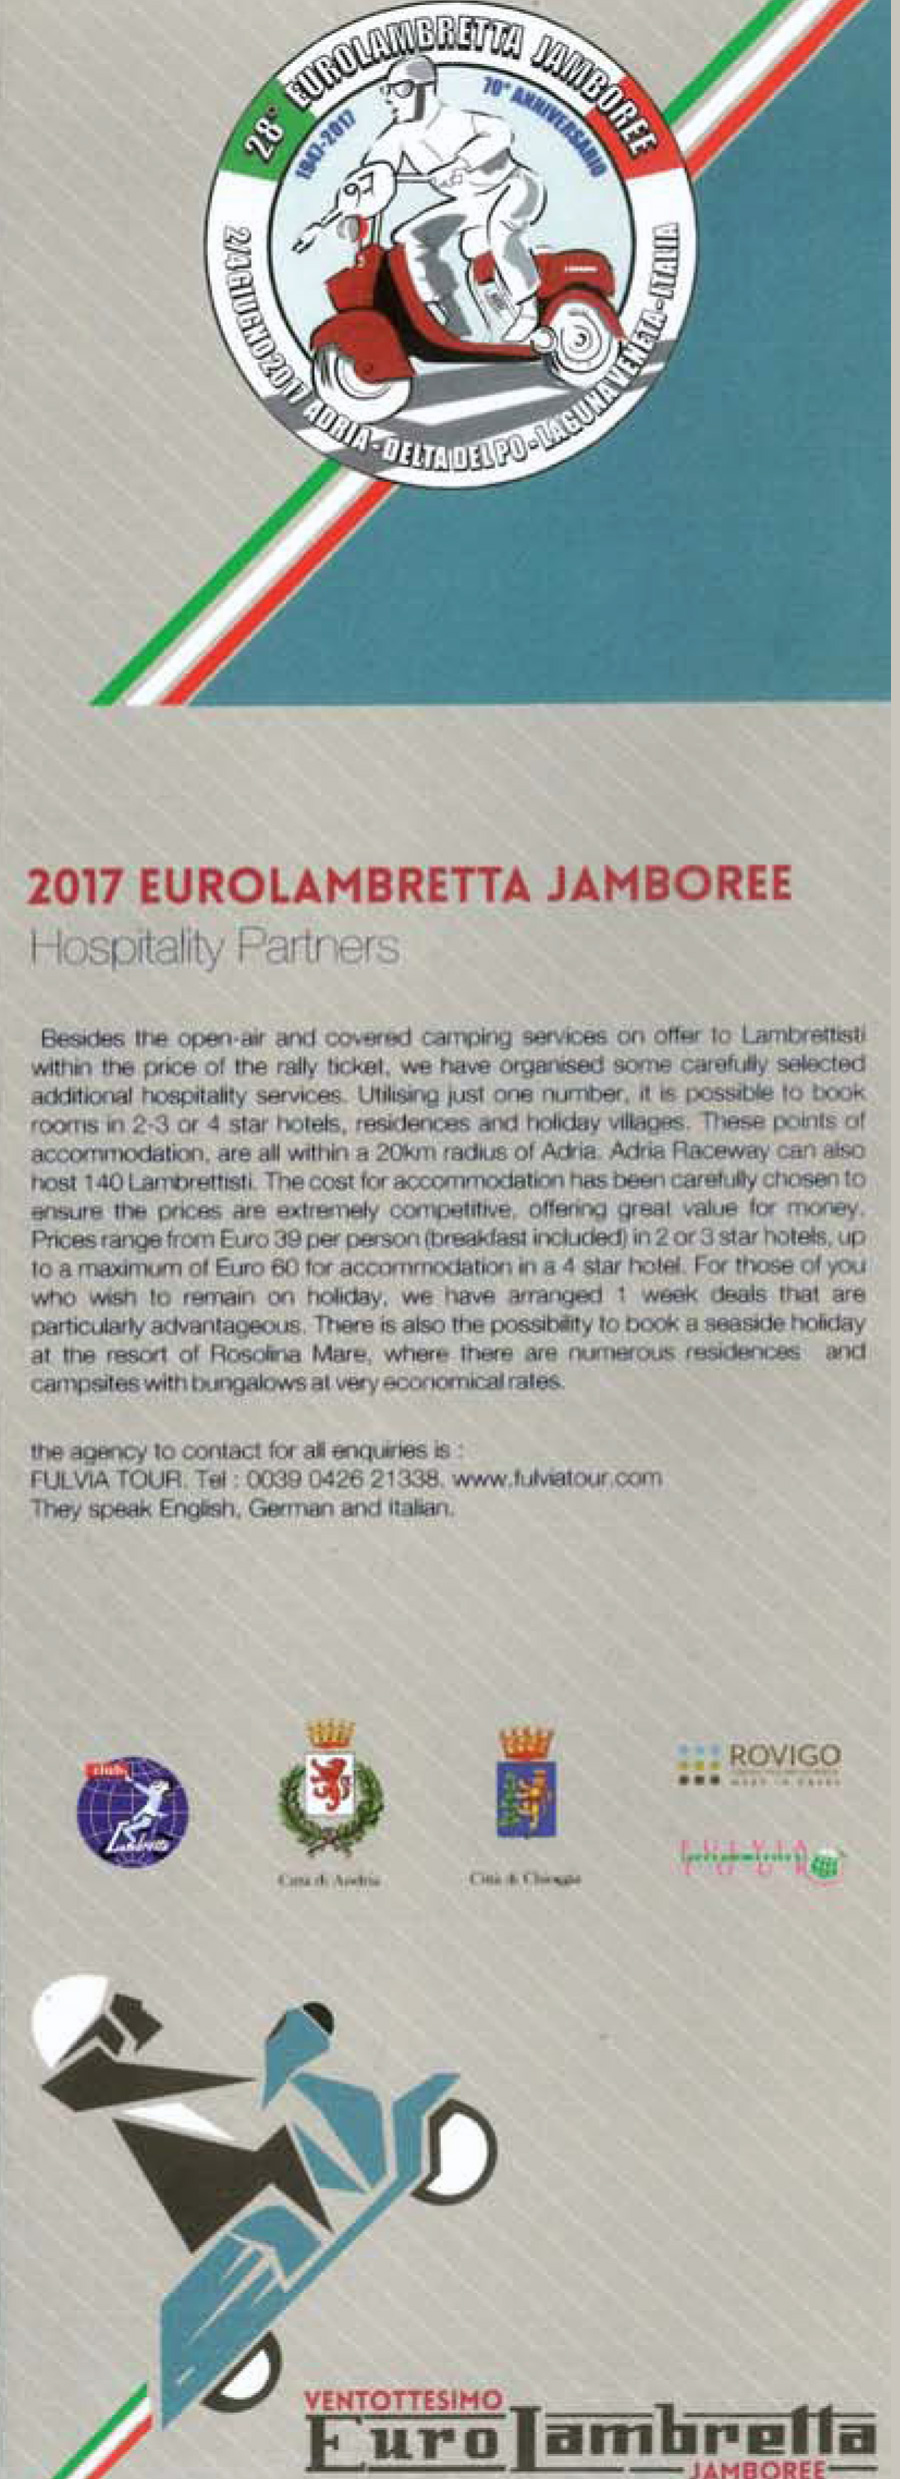 Eurolambretta 2017 Italia